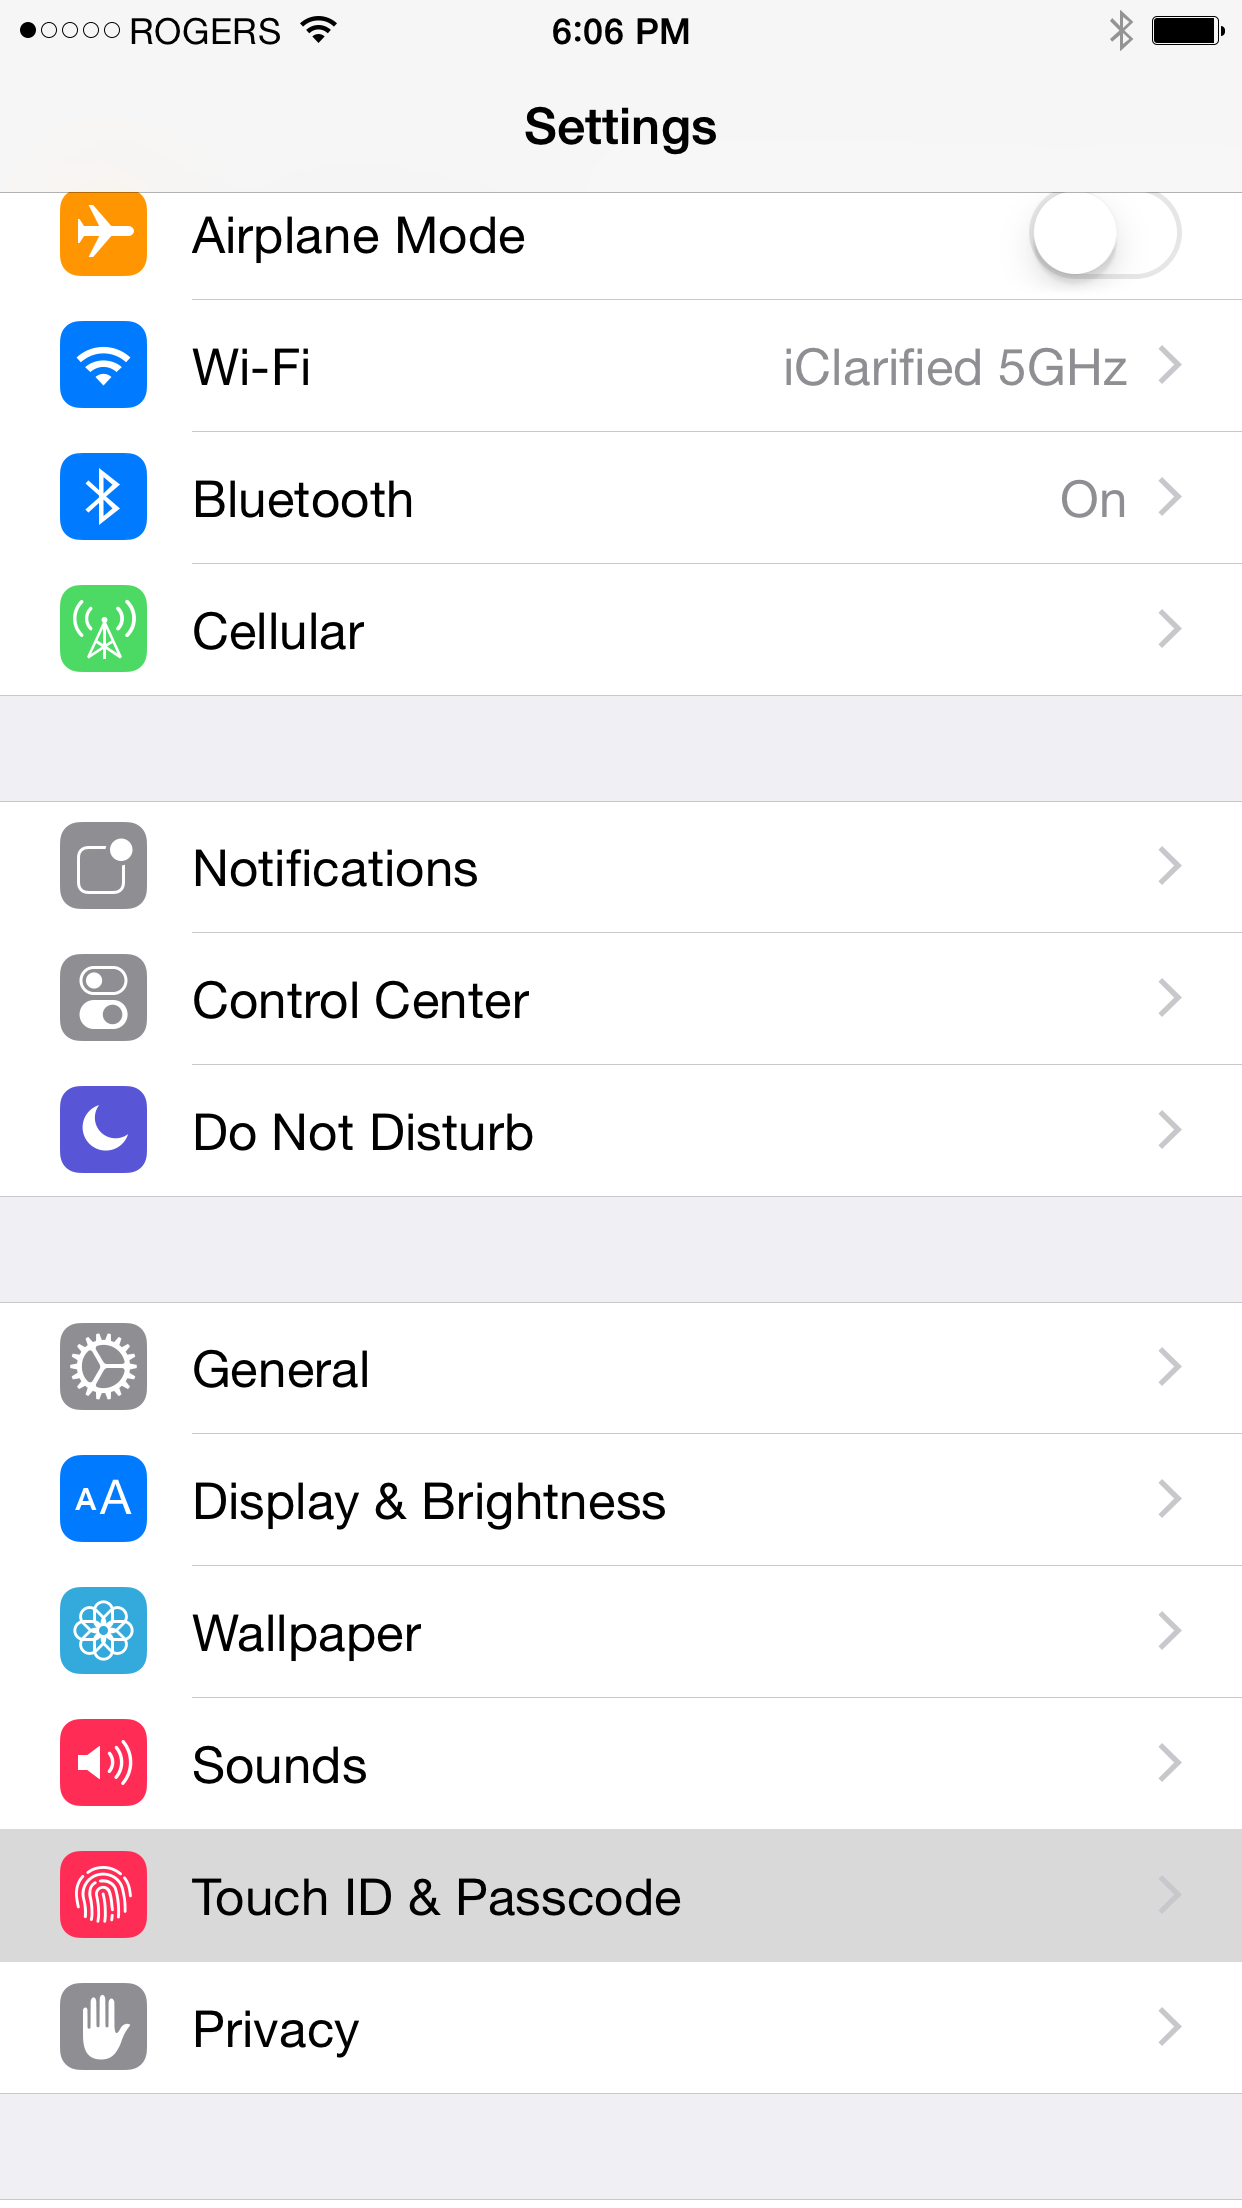 How to Jailbreak Your iPhone 6 Plus, 6, 5s, 5c, 5, 4s Using PP (Mac) [iOS 8.4]